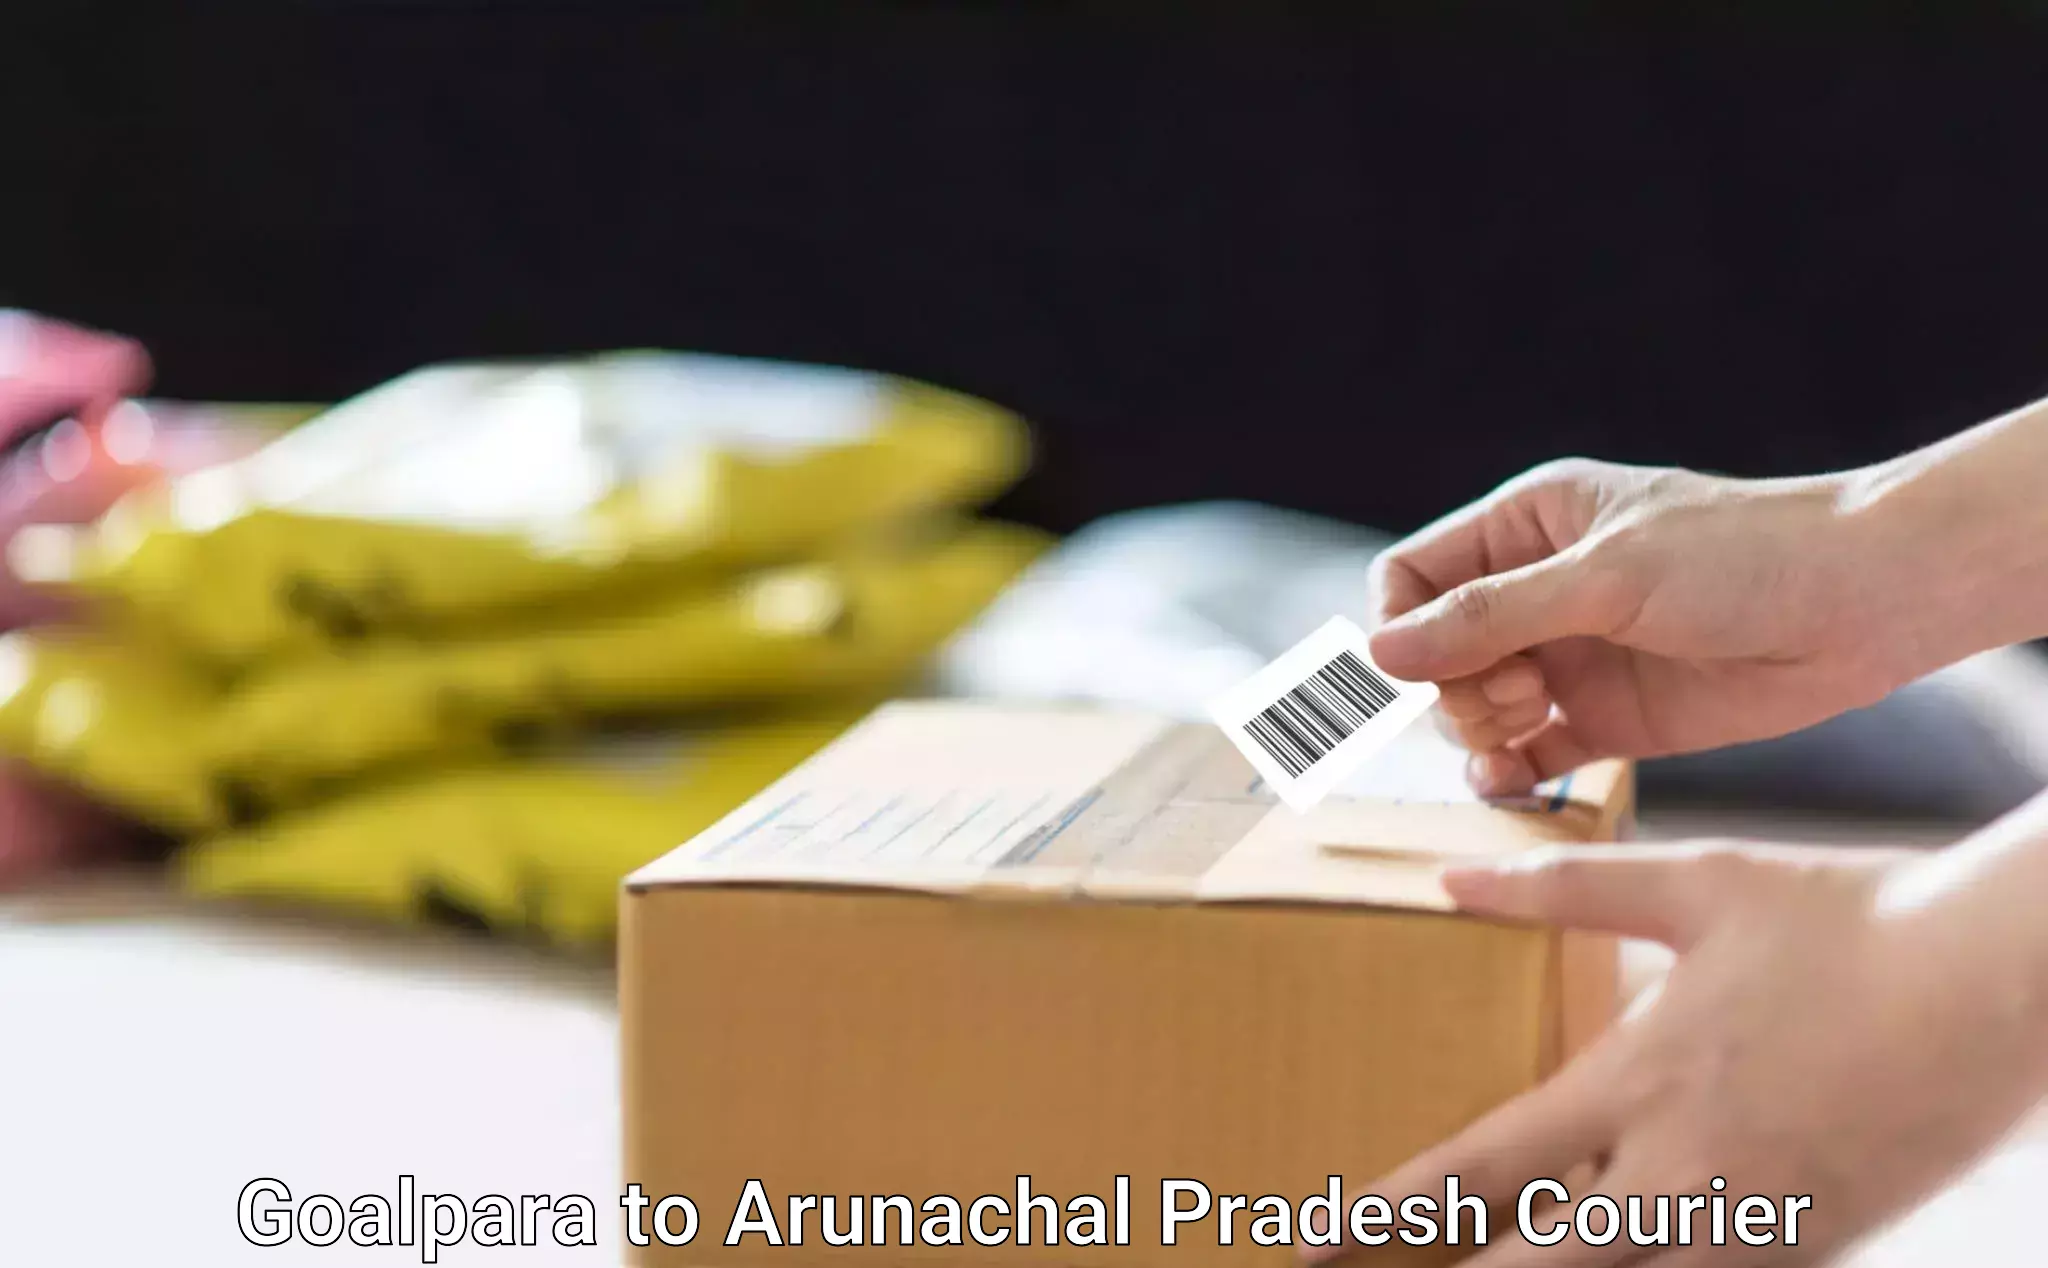 Nationwide parcel services Goalpara to Arunachal Pradesh